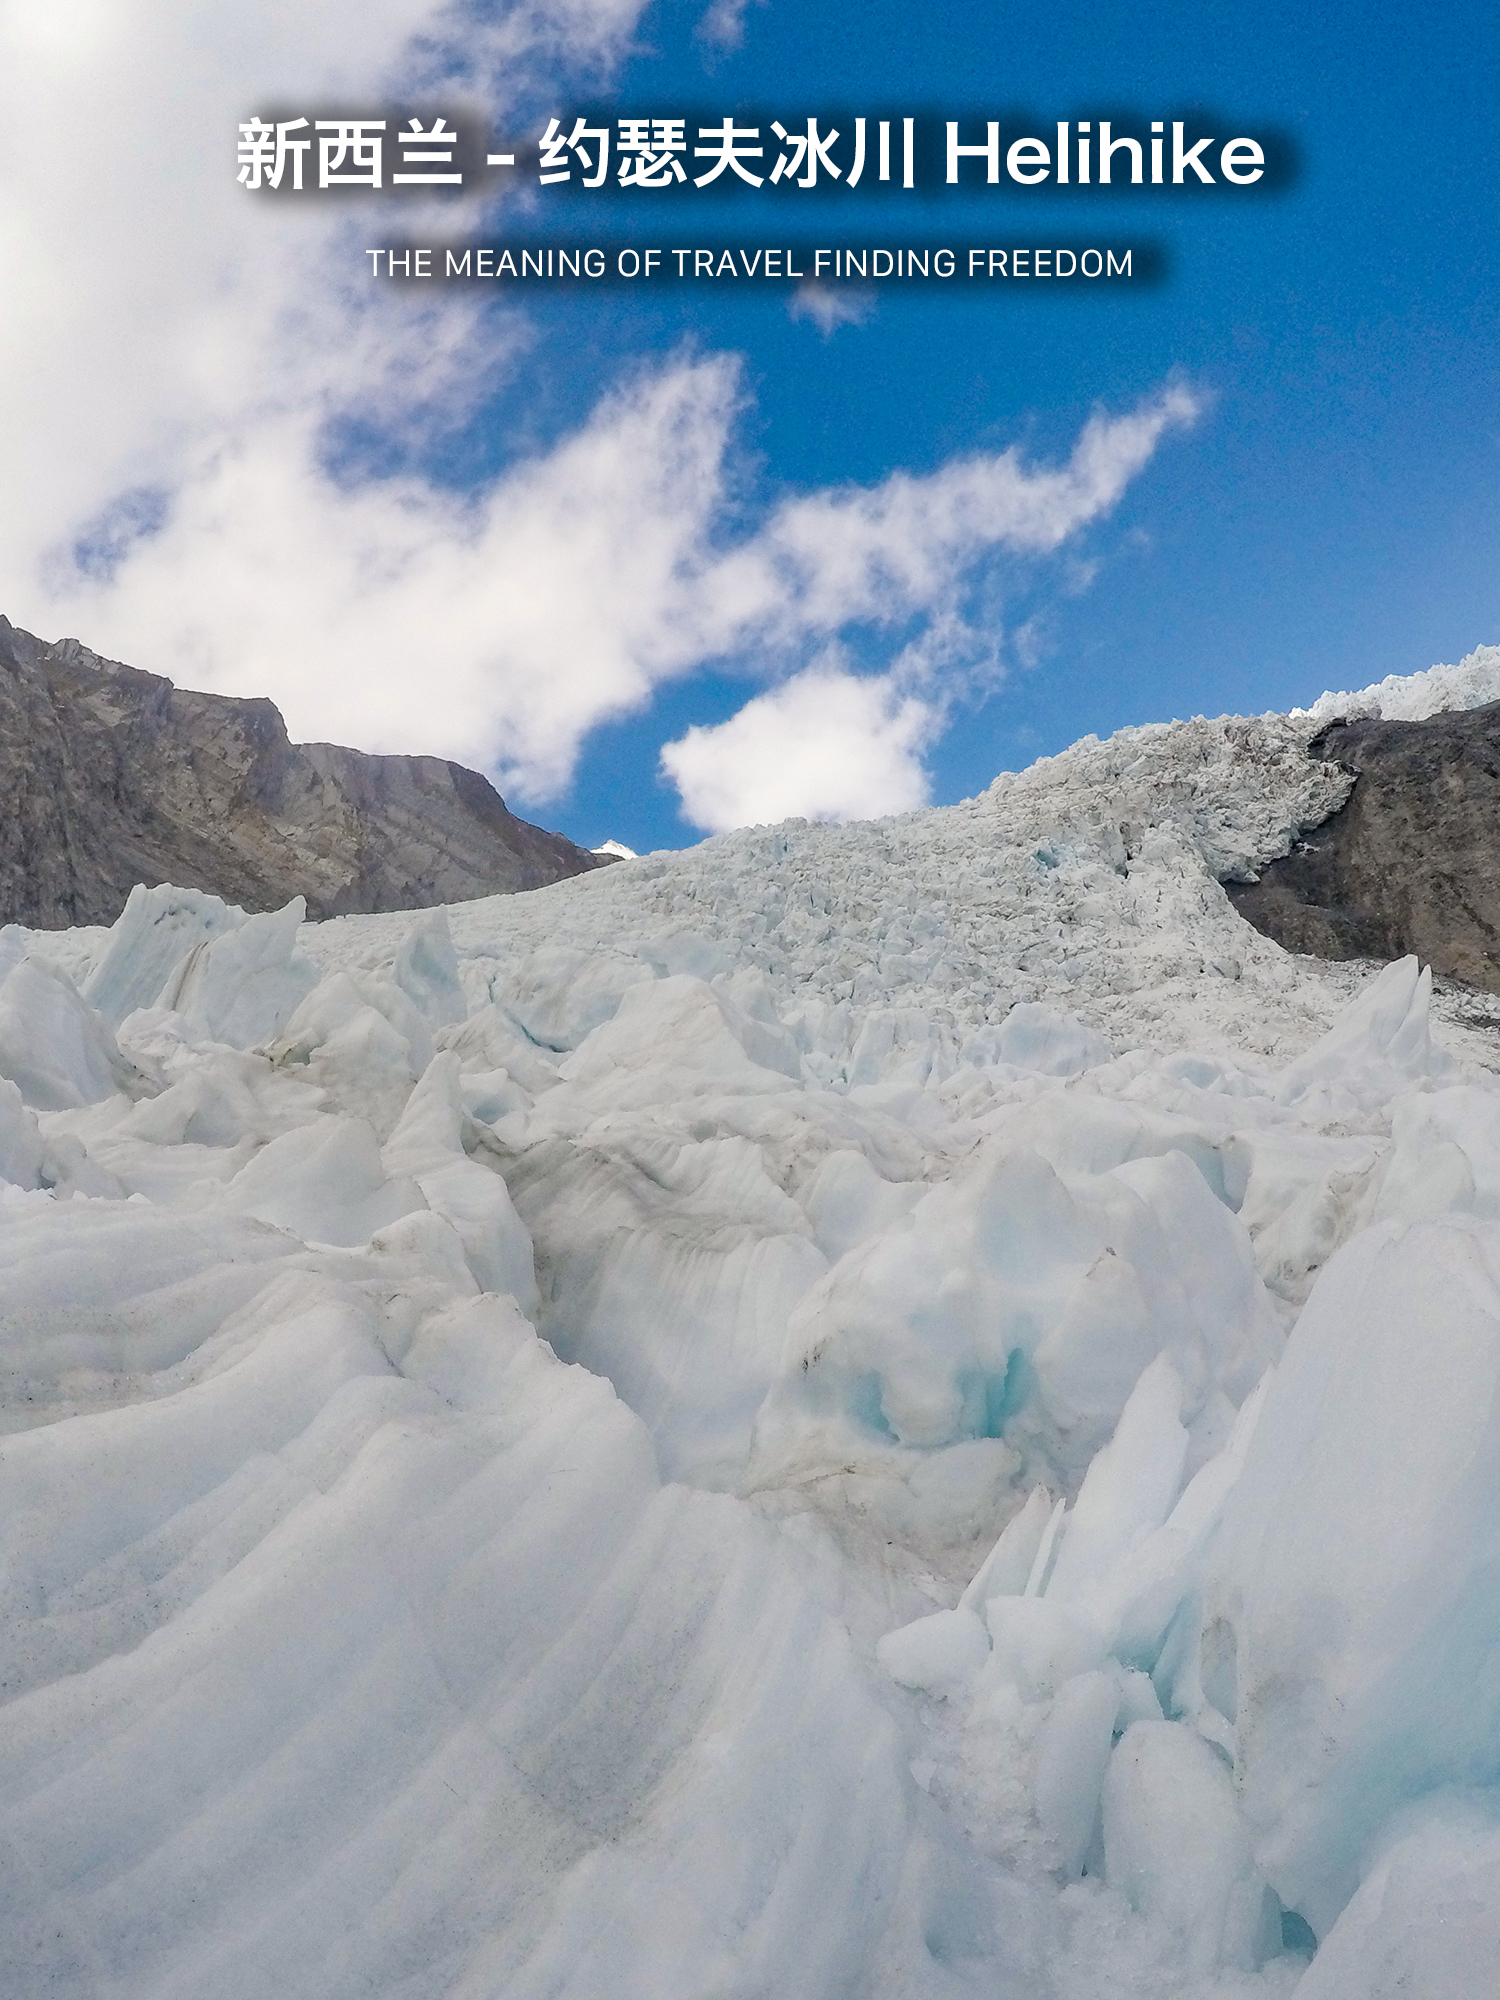 【新西兰】坐直升飞机去原始冰川探险徒步攻略